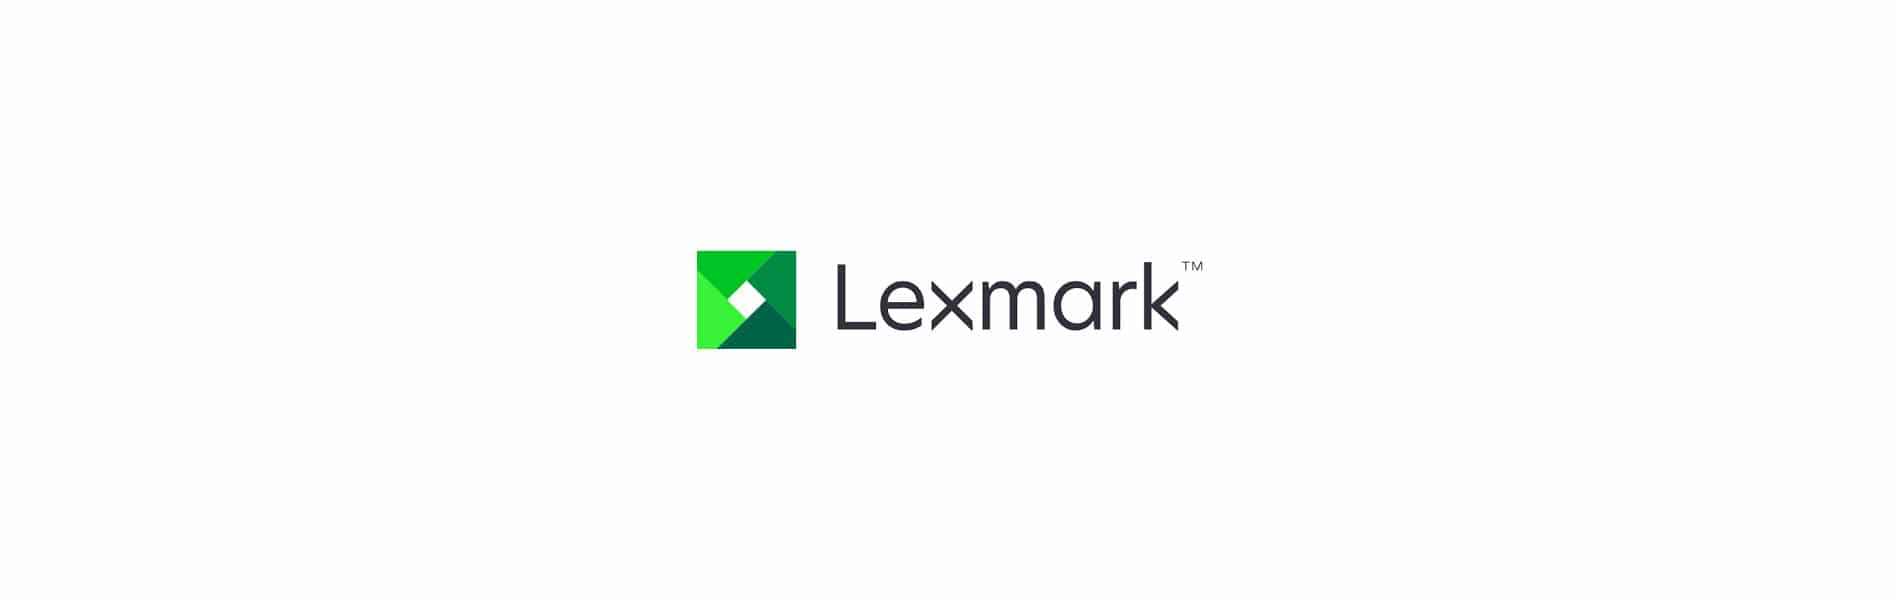 Das junge Unternehmen Lexmark, bietet Drucker und Kopierer an.